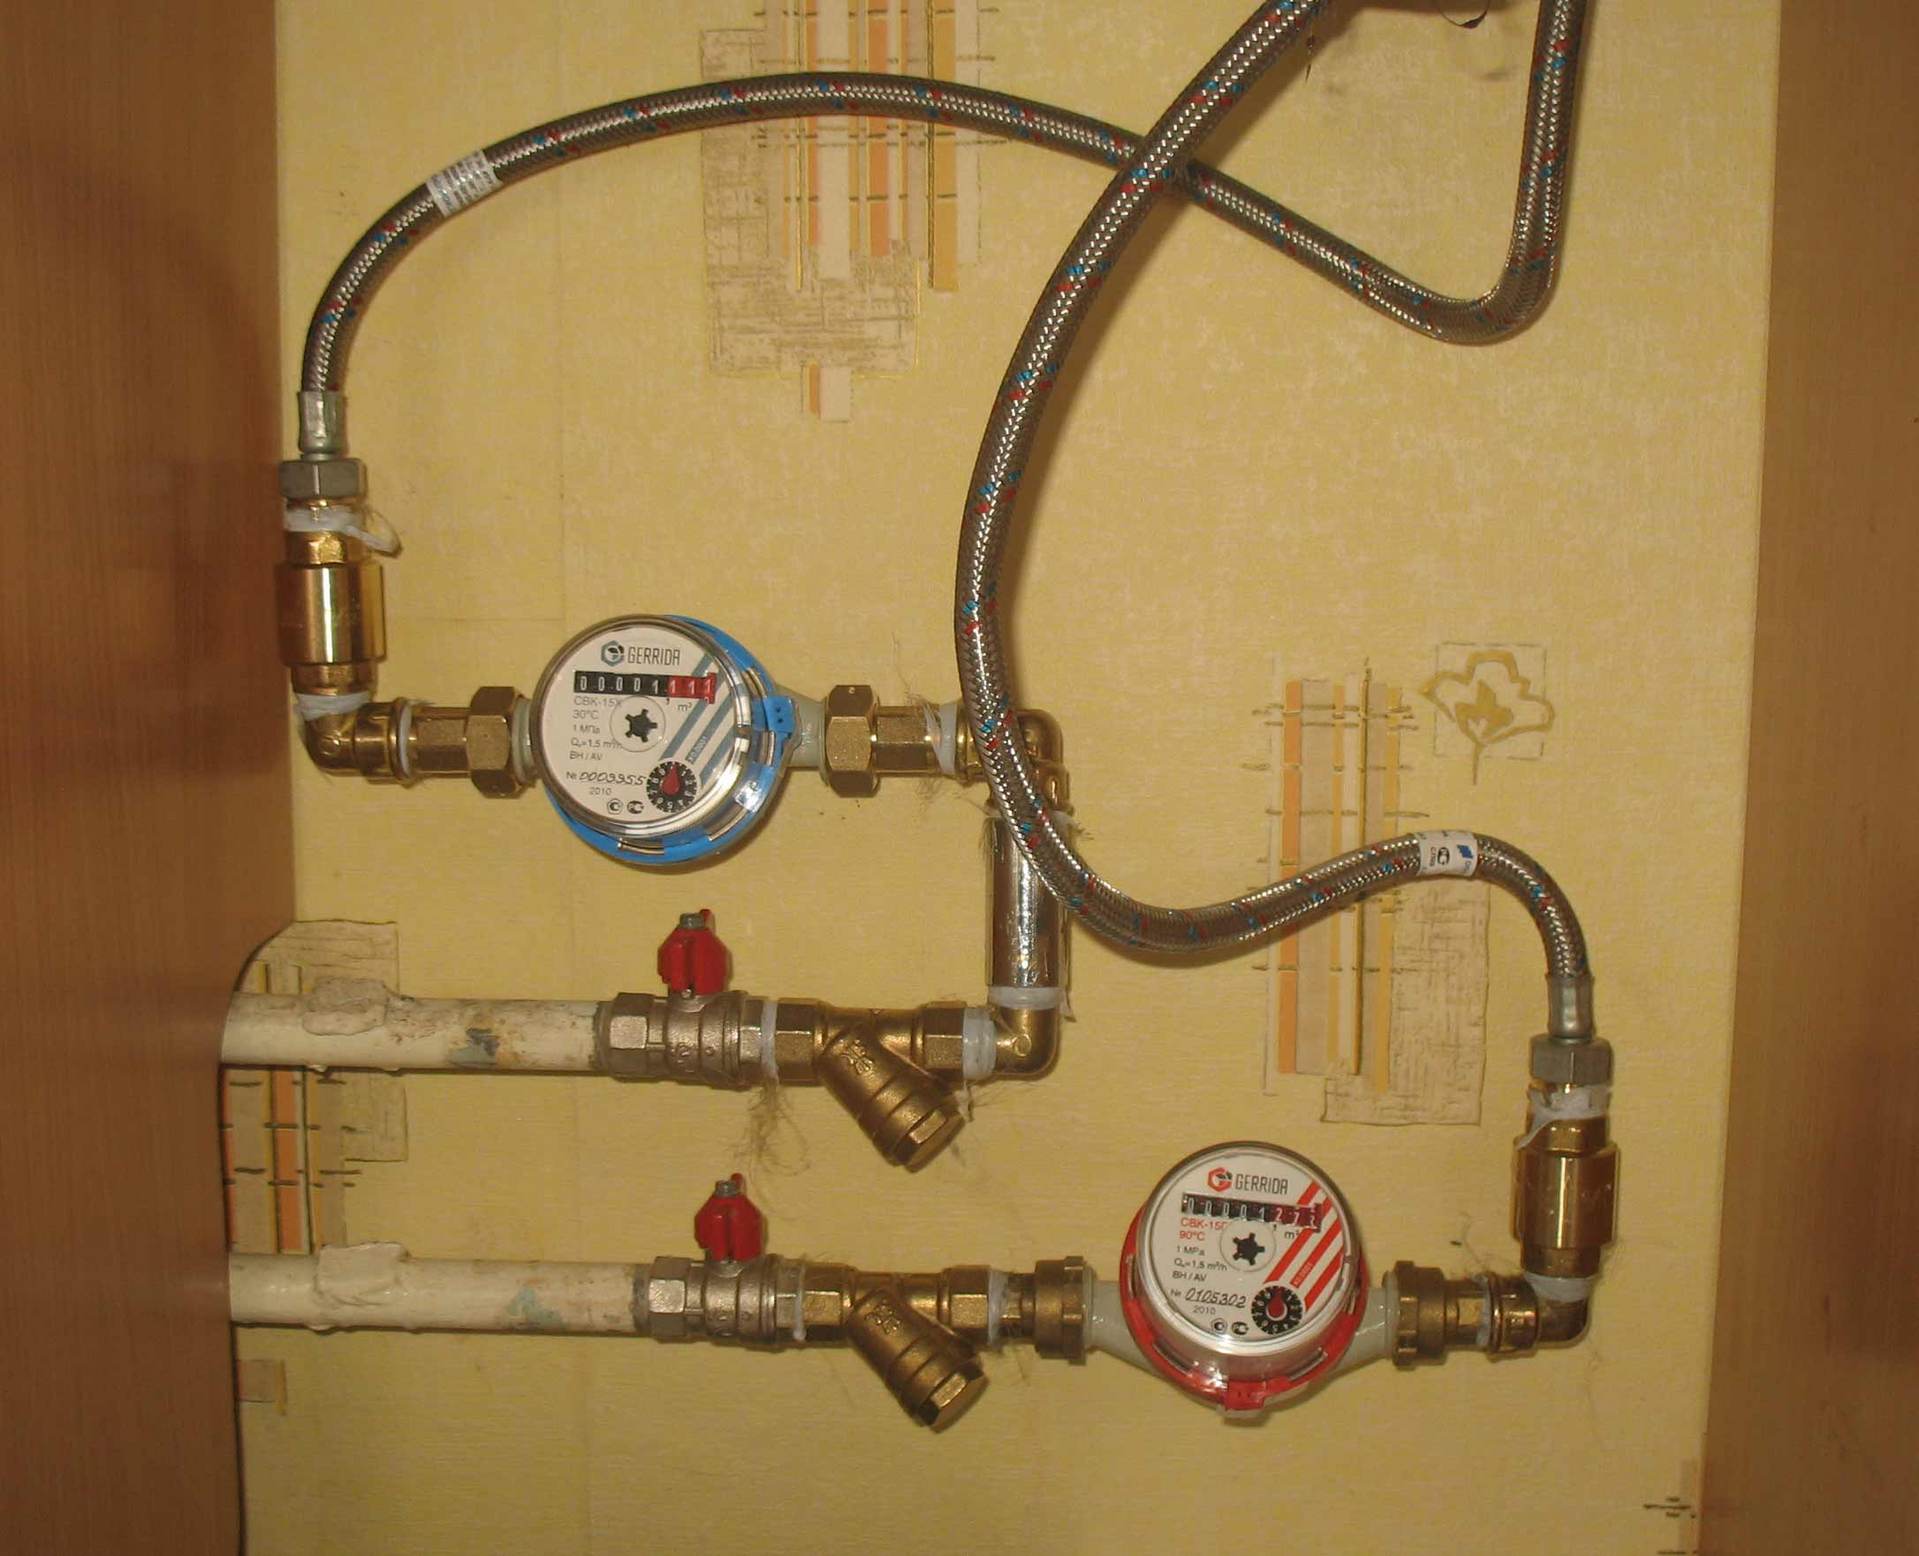 Установка счетчиков воды: как правильно поставить водосчетчик в квартире или частном доме (видео, фото)